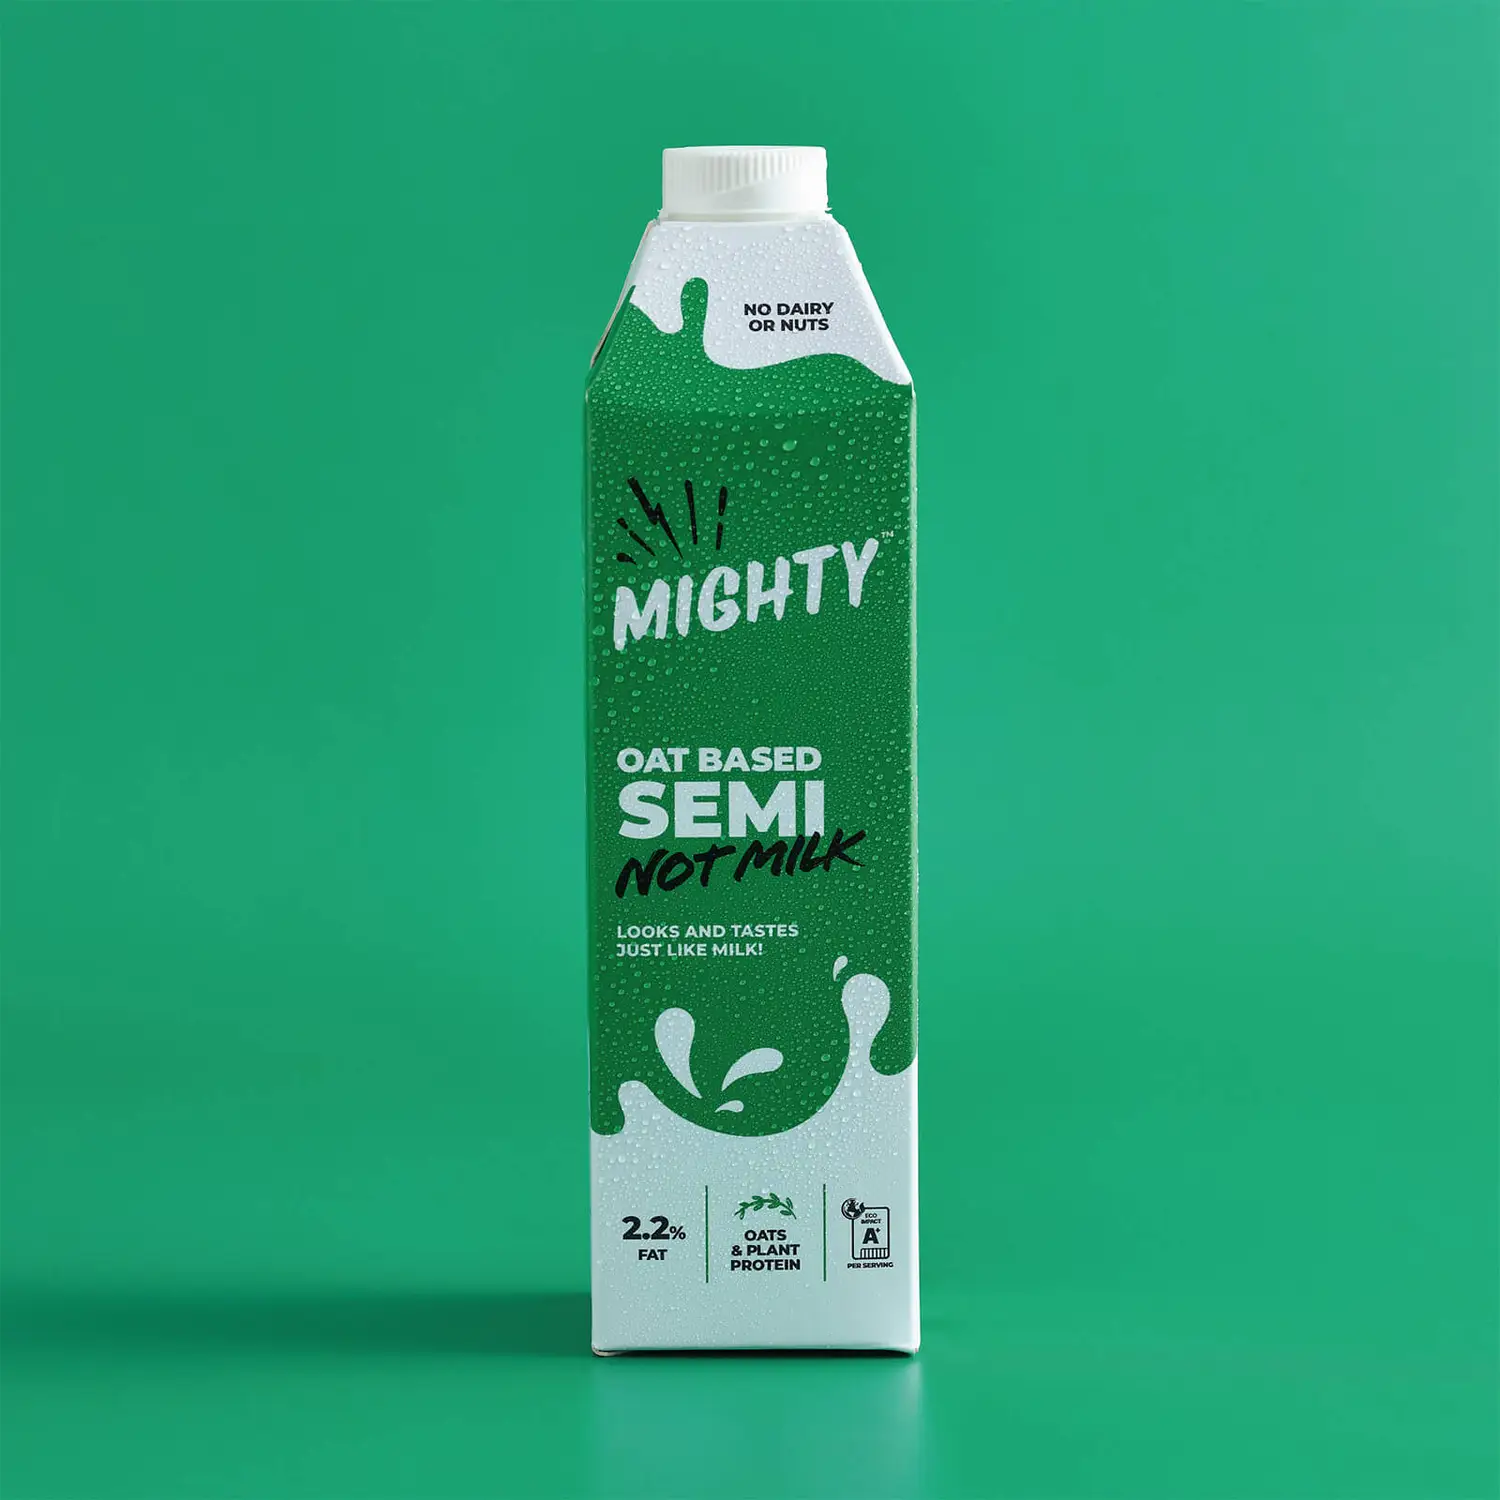 Mighty Oat based Semi Not Milk